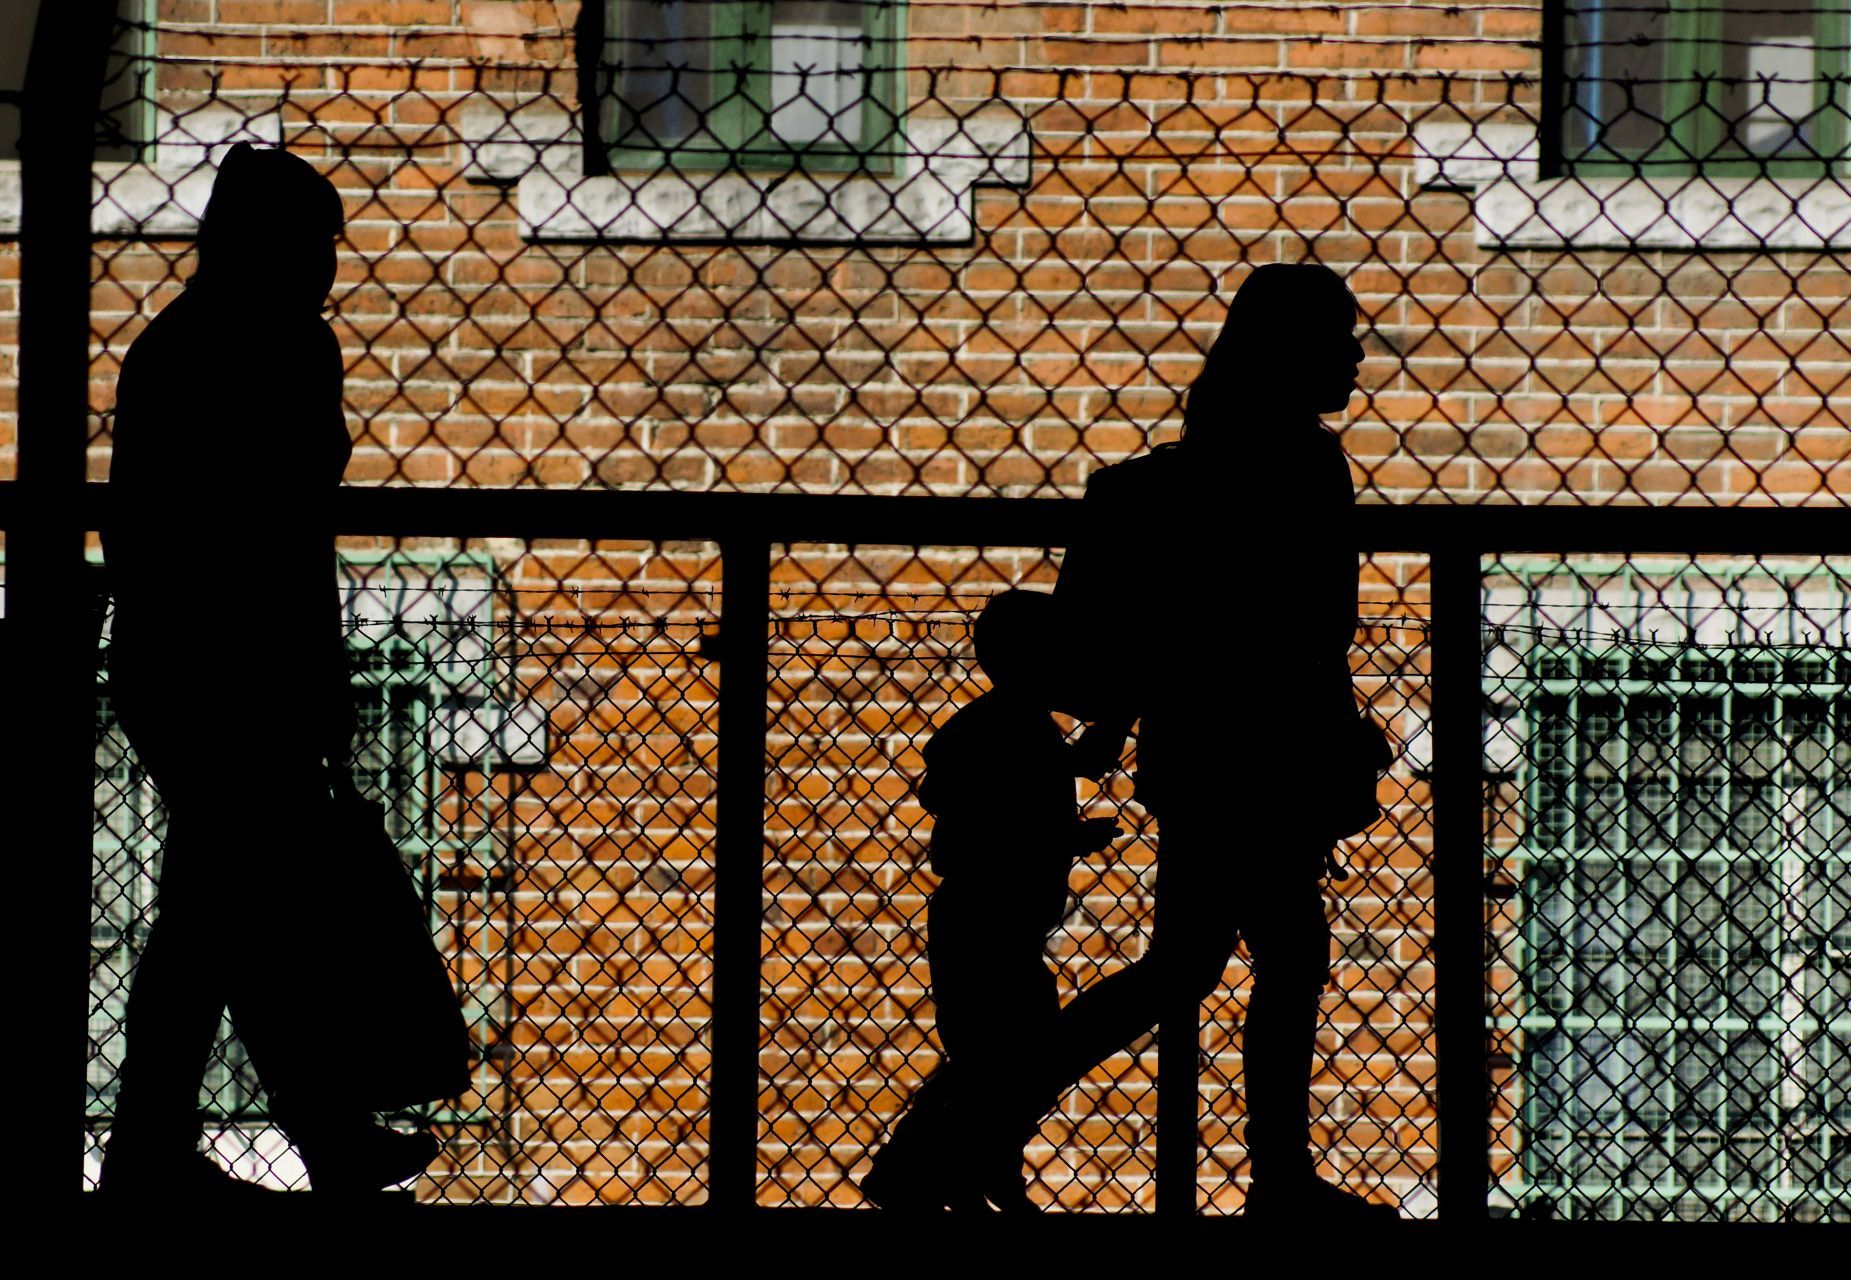 MÉXICO, D.F., 11NOVIEMBRE2012.- La silueta de una mujer y su hijo caminan por los andenes del metro San Antonio Abad.
FOTO: PEDRO ANZA /CUARTOSCURO.COM